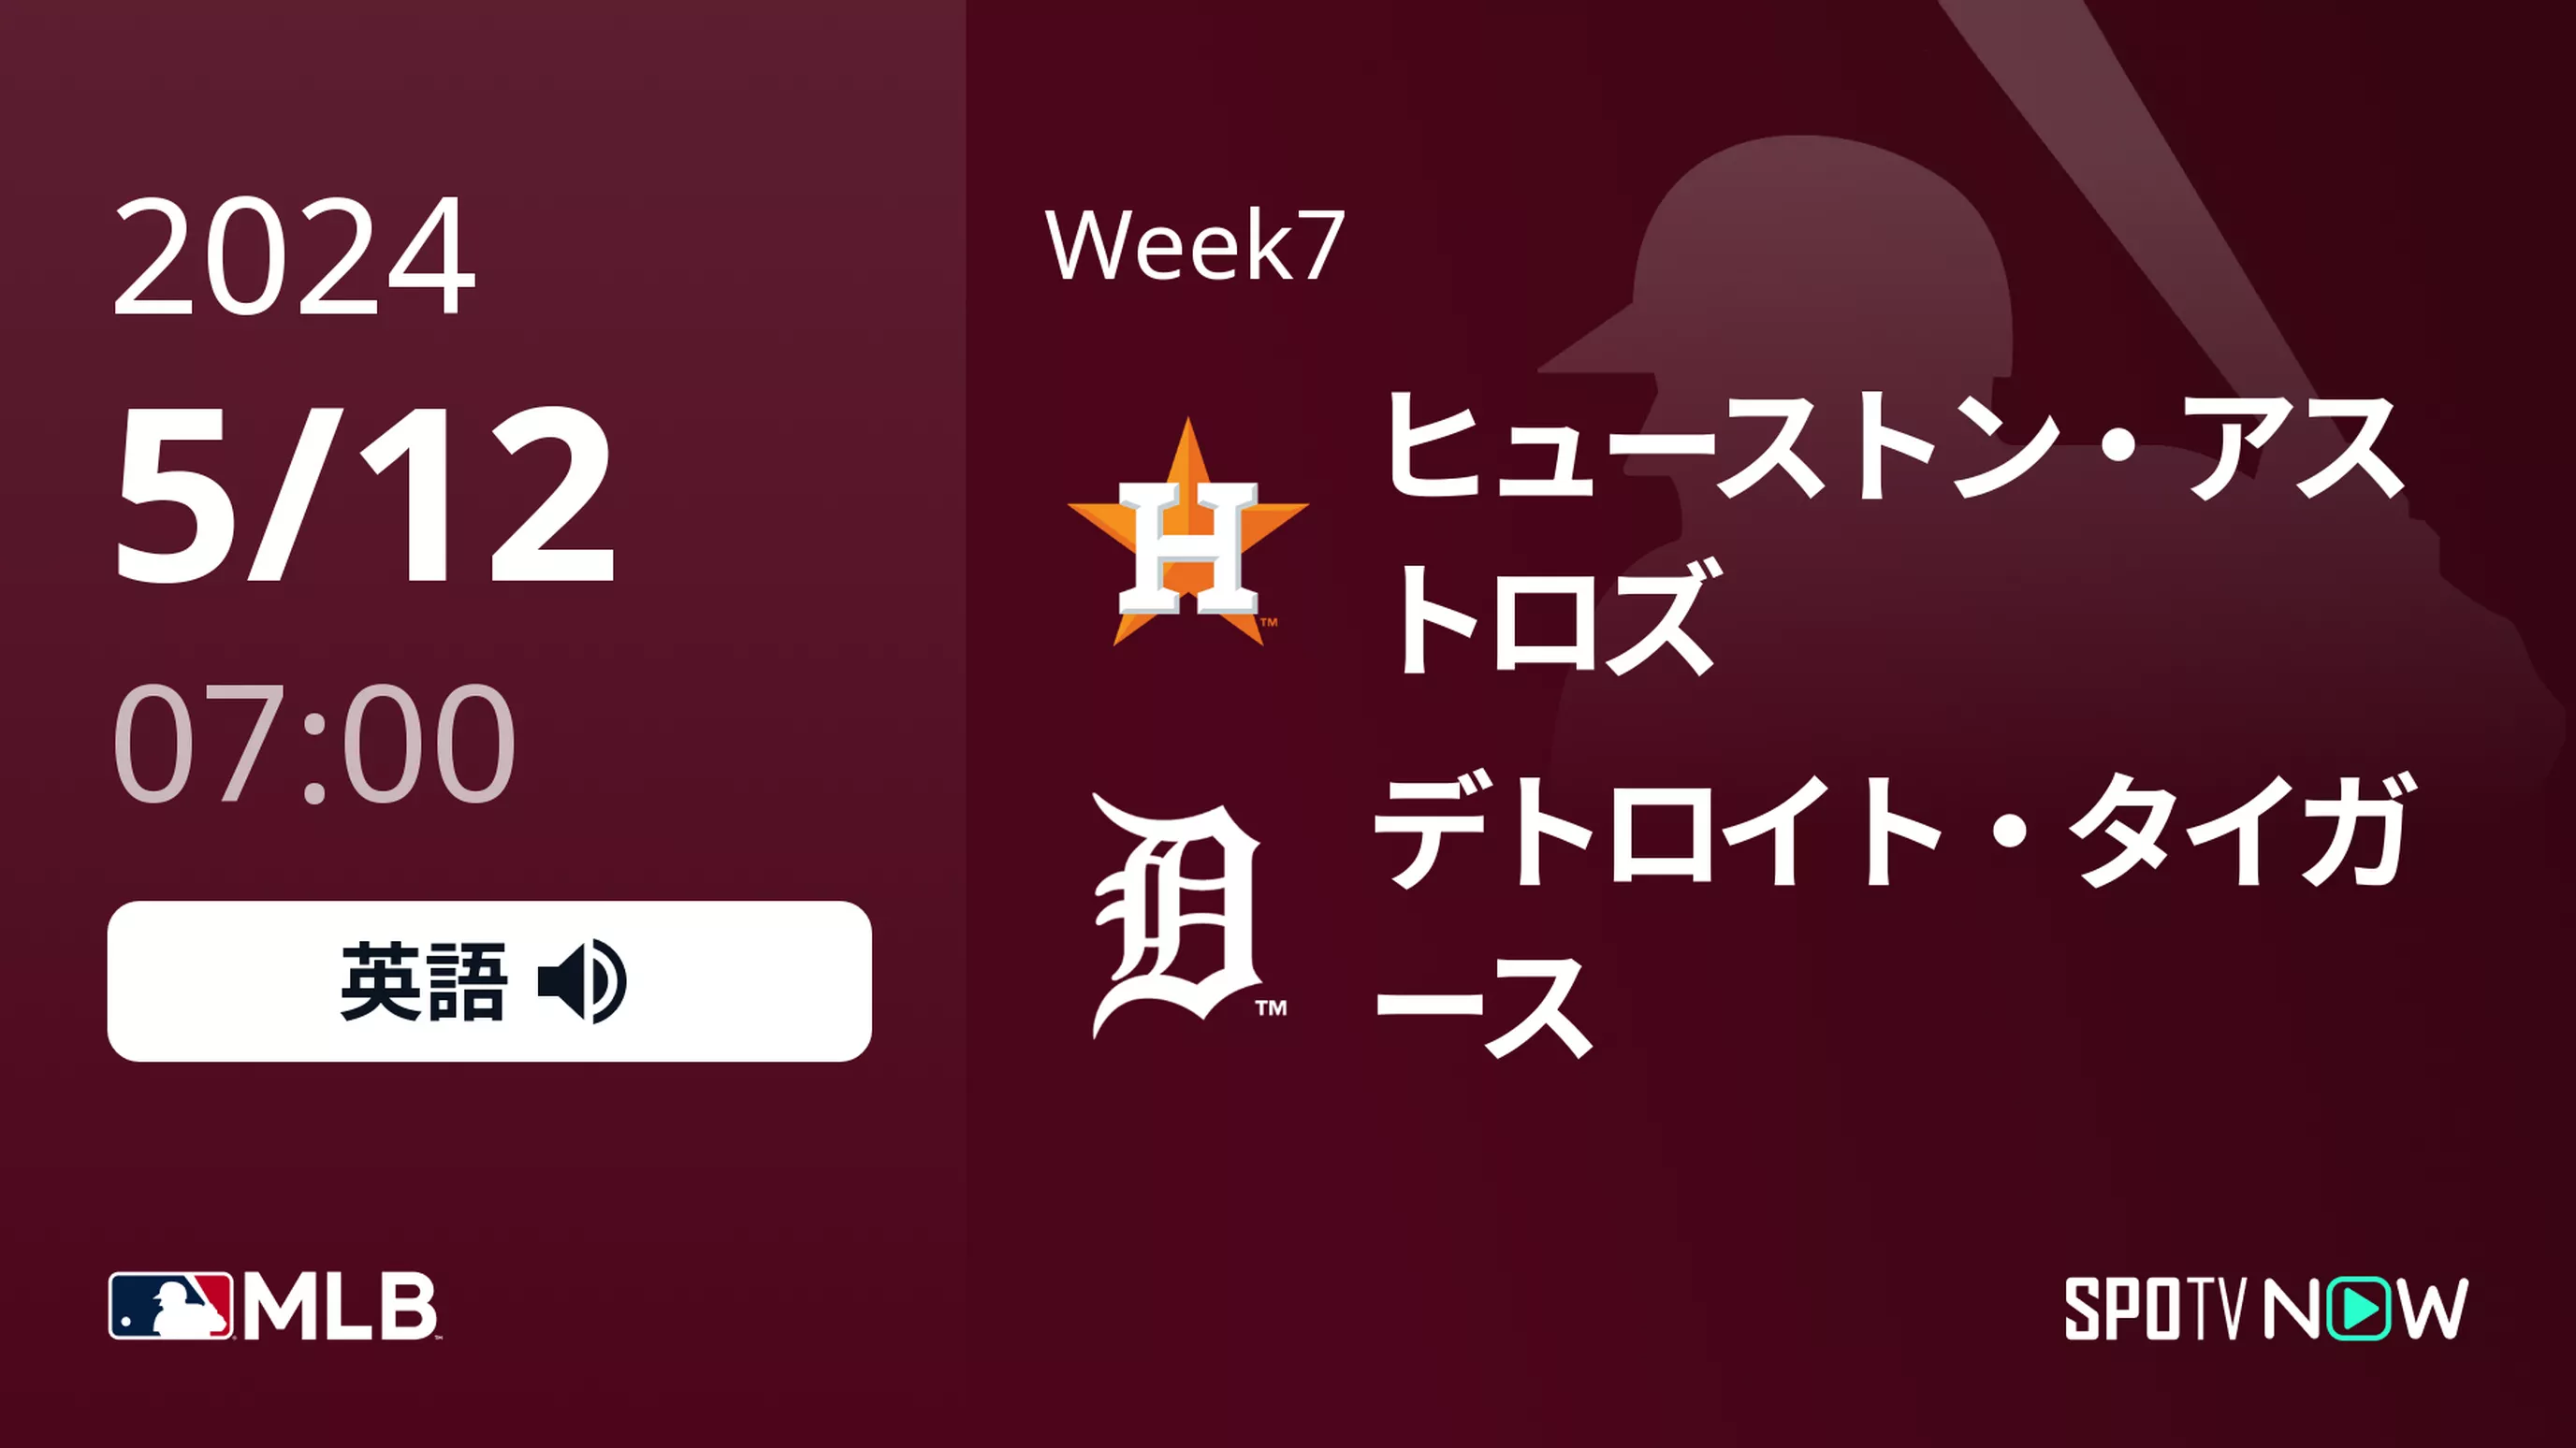 Week7 アストロズ vs タイガース 5/12[MLB]